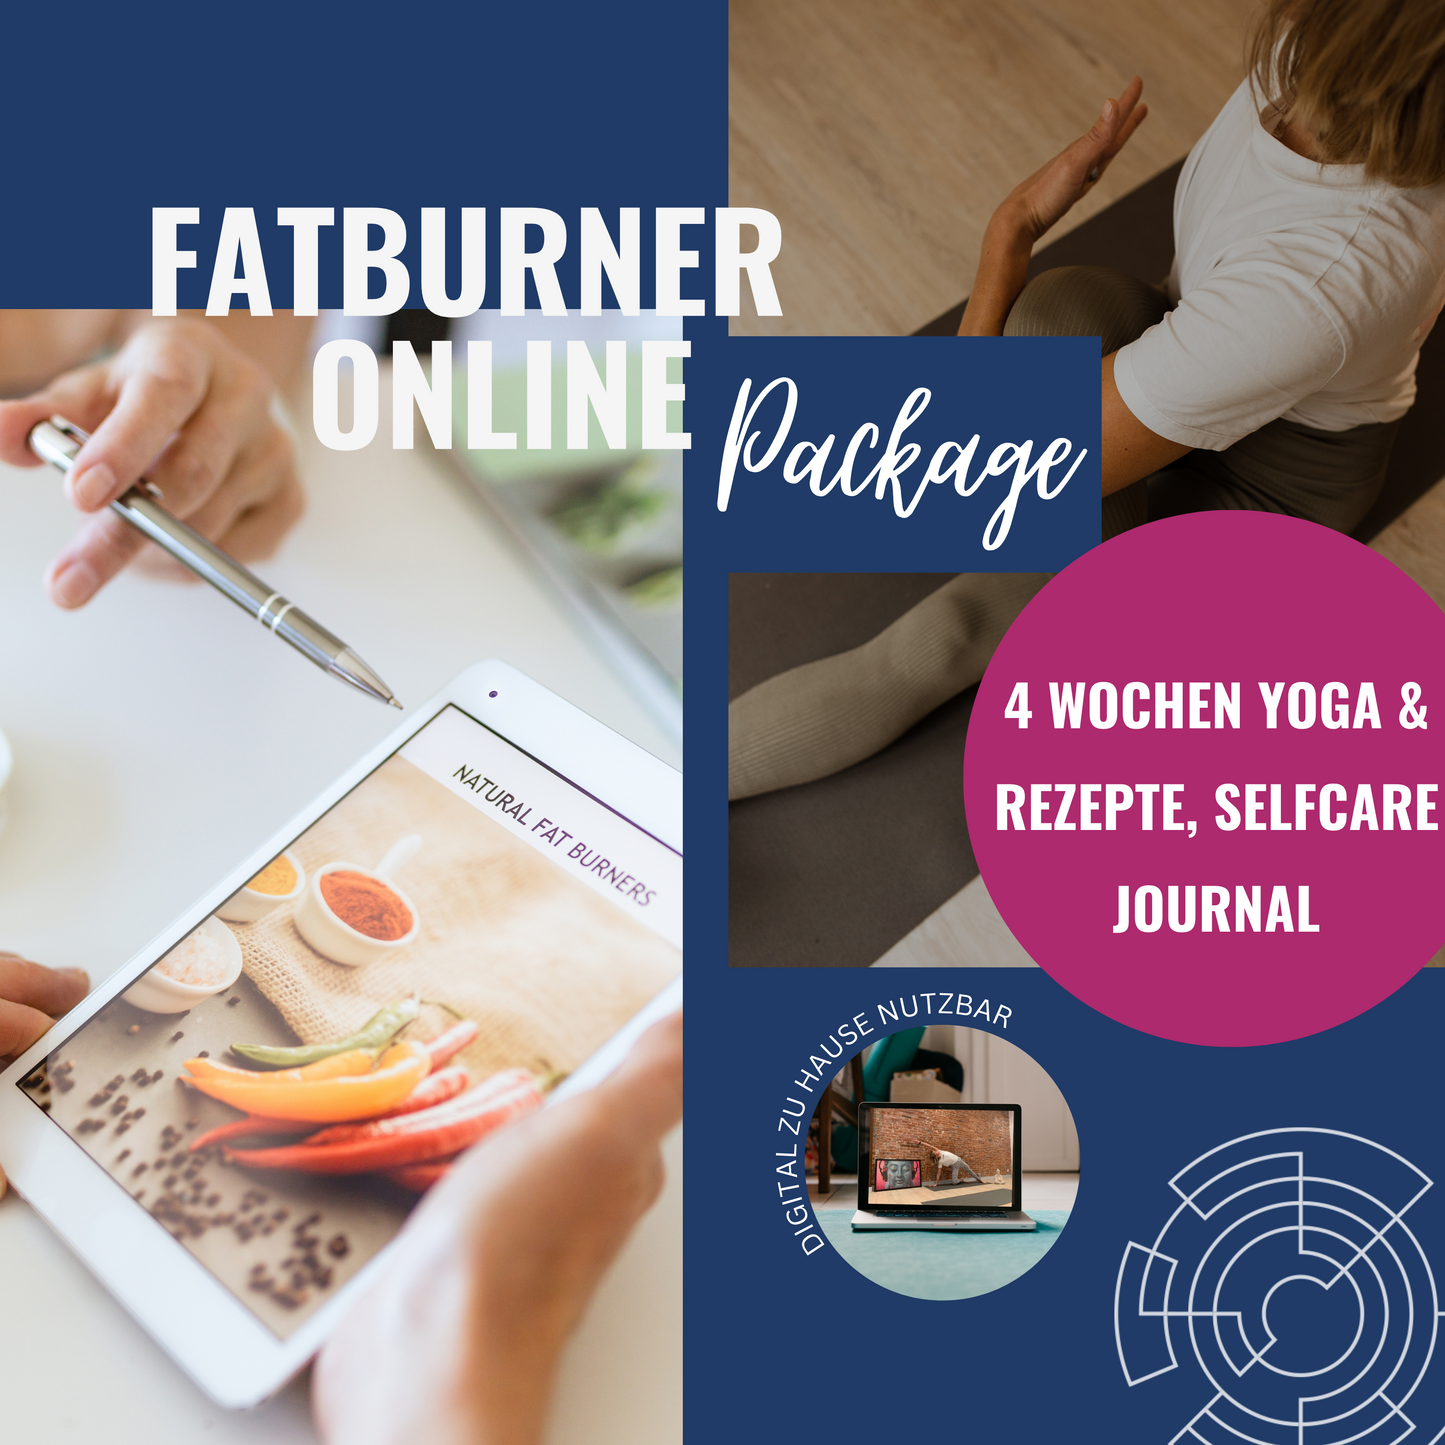 Fatburner Online Package